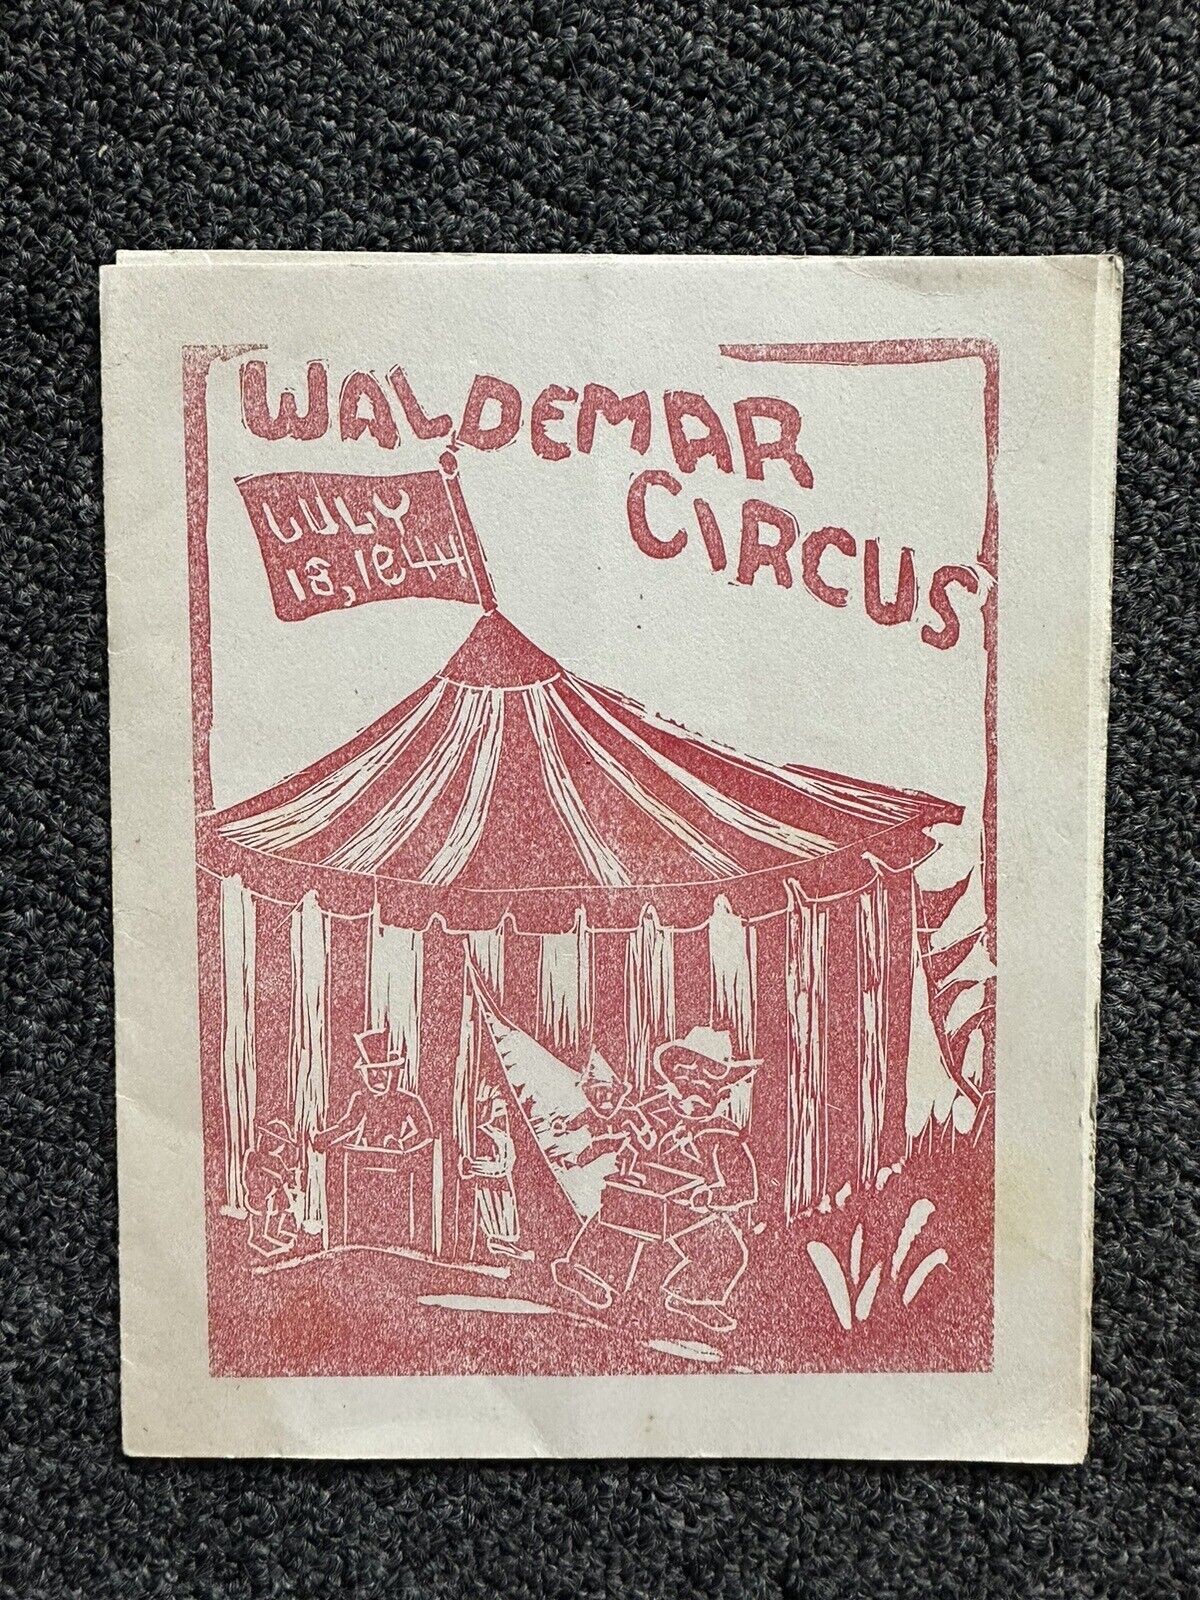 Rare 1944 Waldemar Circus menu WW2 era Banquet Female Ringleader